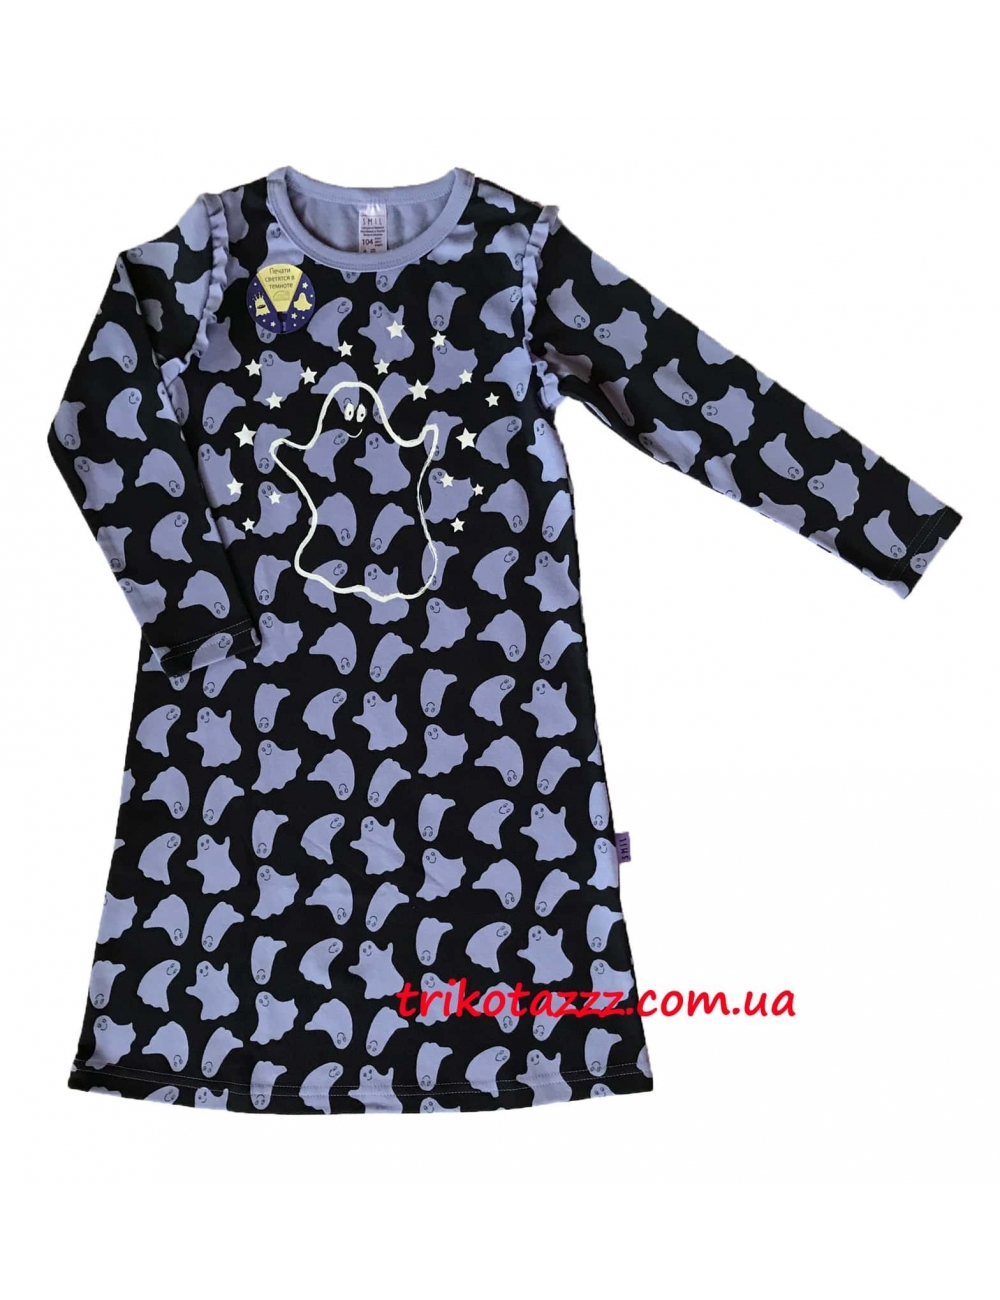 Ночная рубашка со световым эффектом для девочки с легким начесом тм"Смил" рисуок